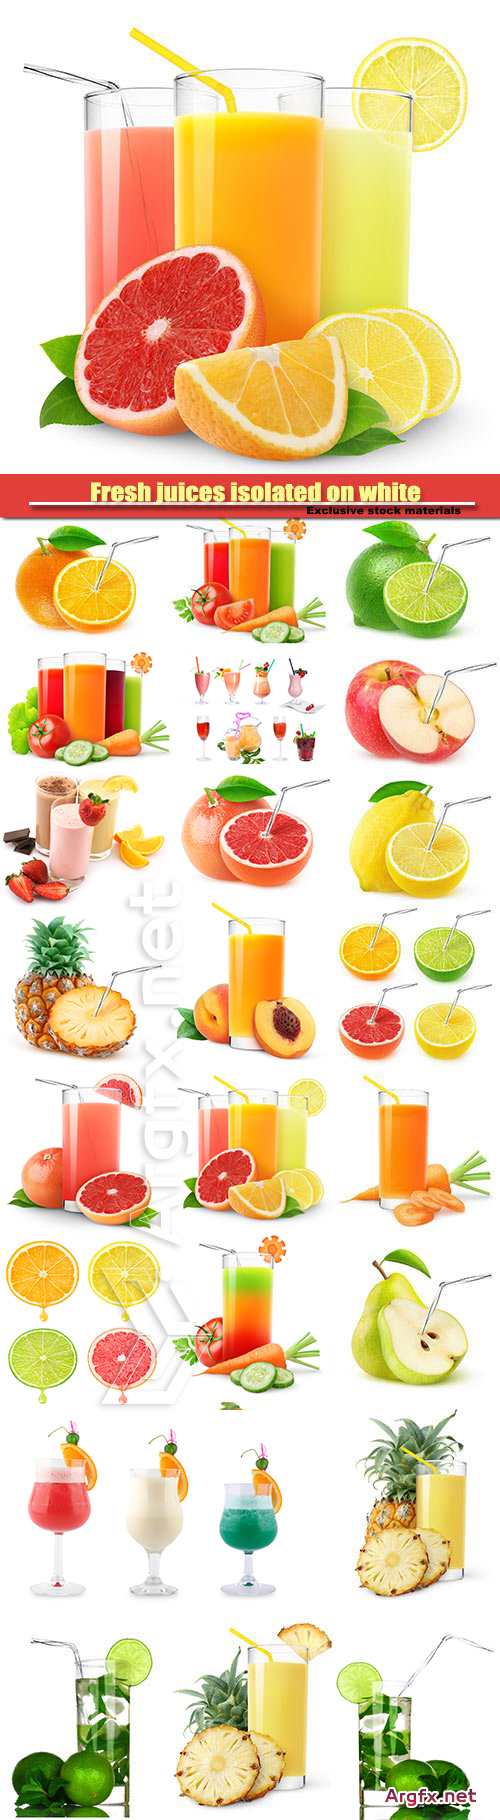 Fresh juices isolated on white background